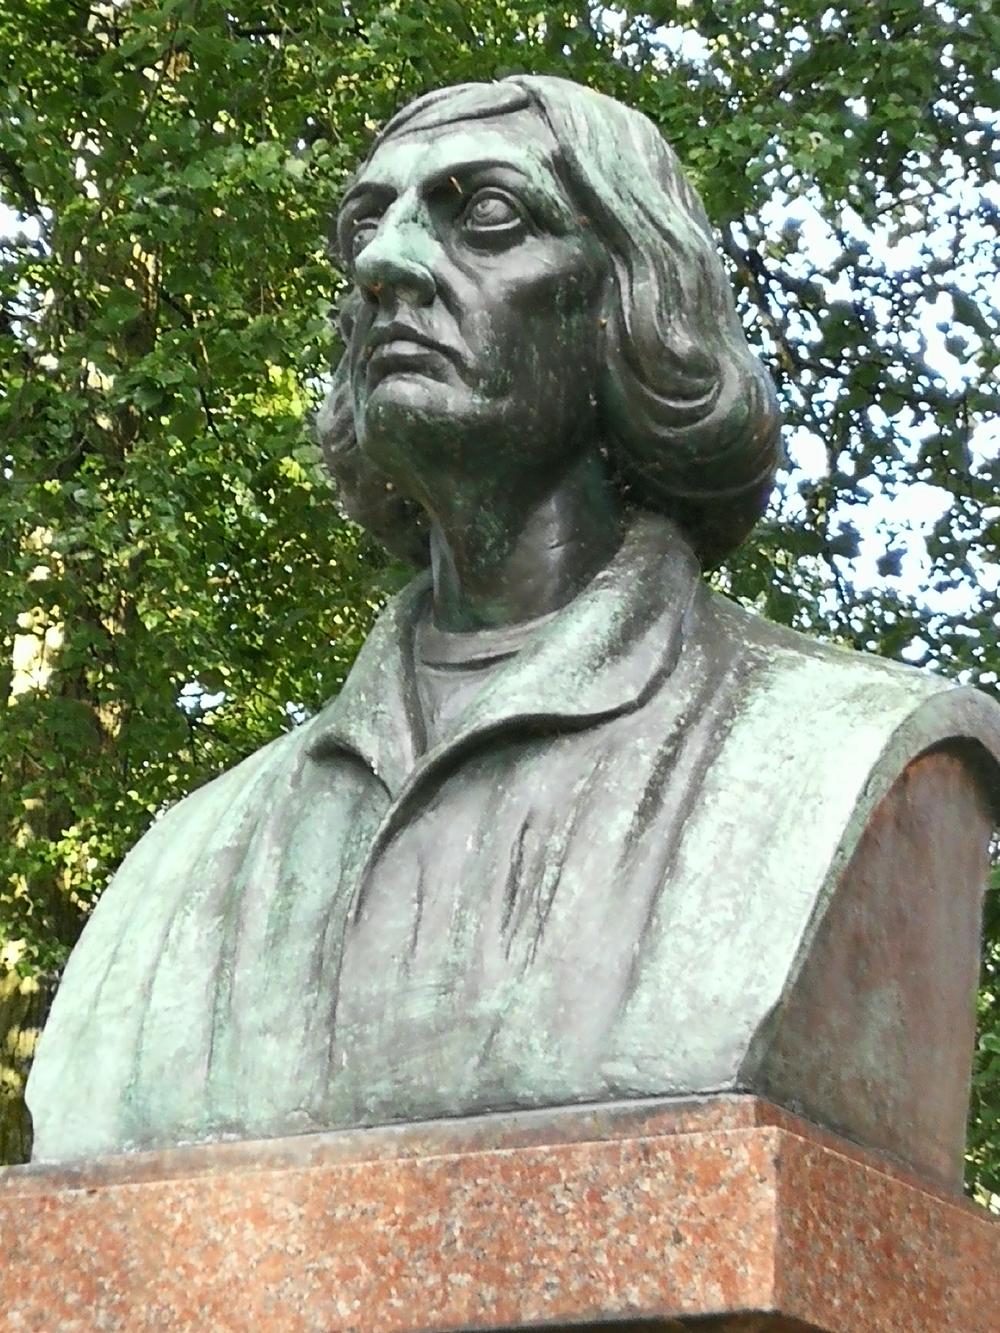 Copernicus statue near Castle Allenstein/Olsztyn (